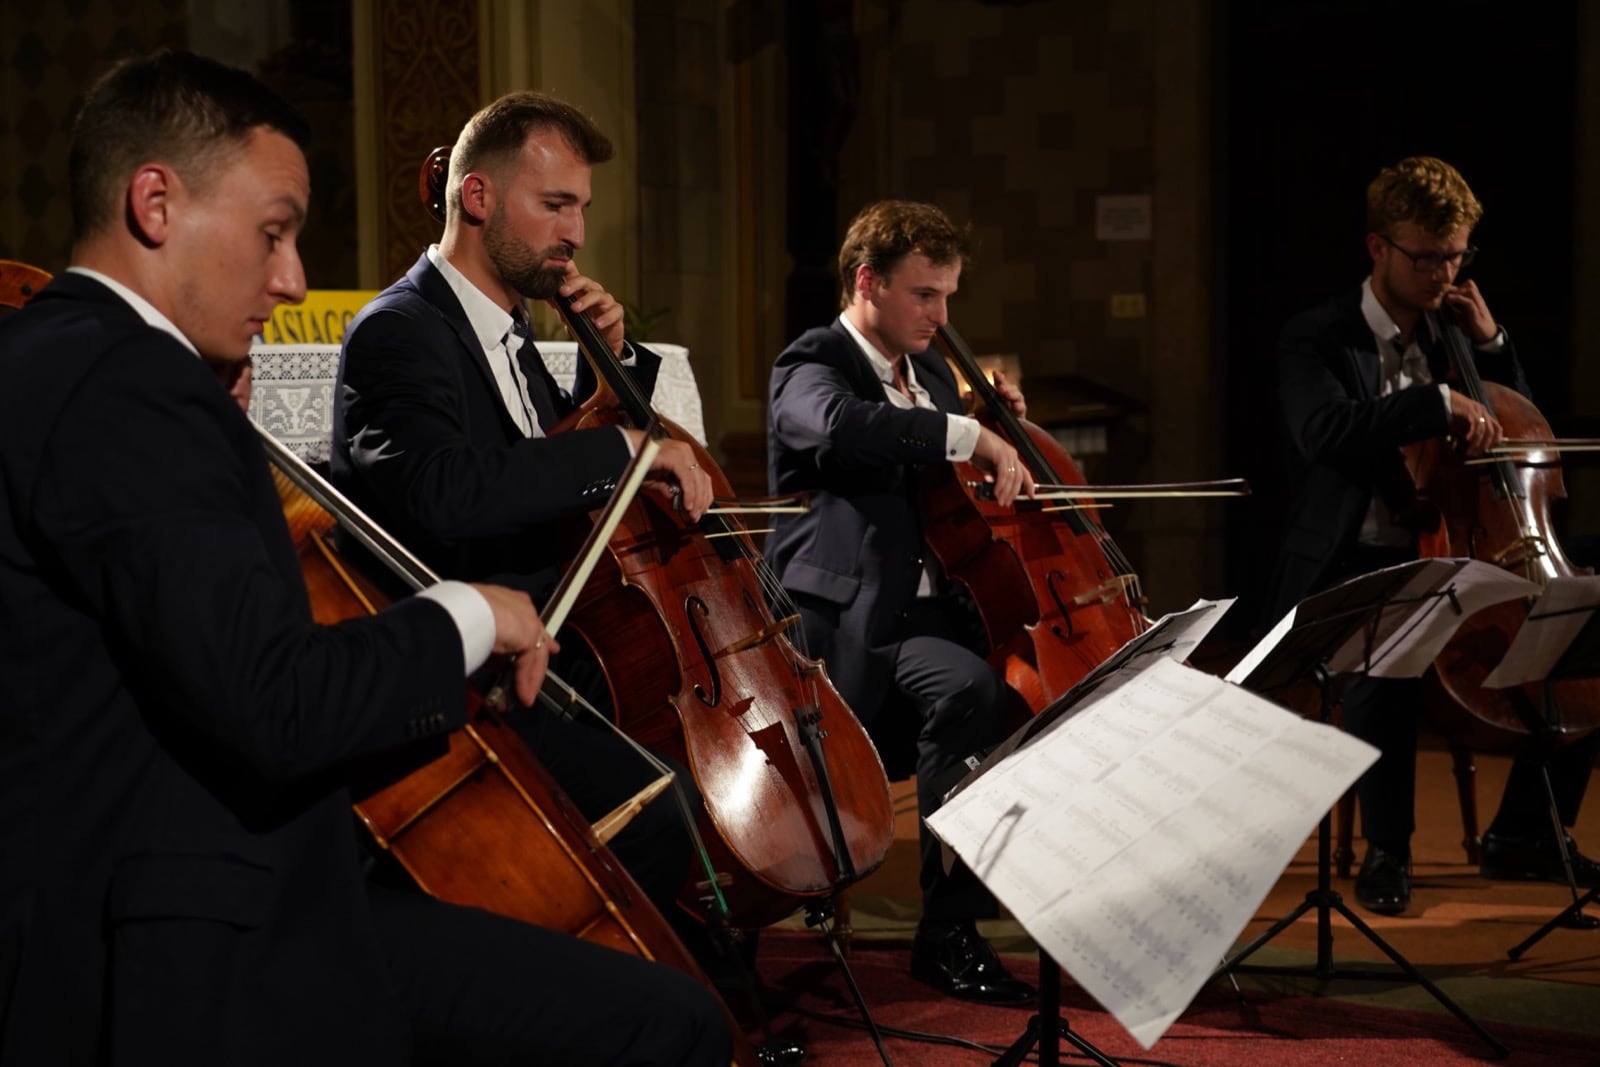 13-08-2019 - Polish Cello Quartet - "Il quartetto di violoncelli" - 014